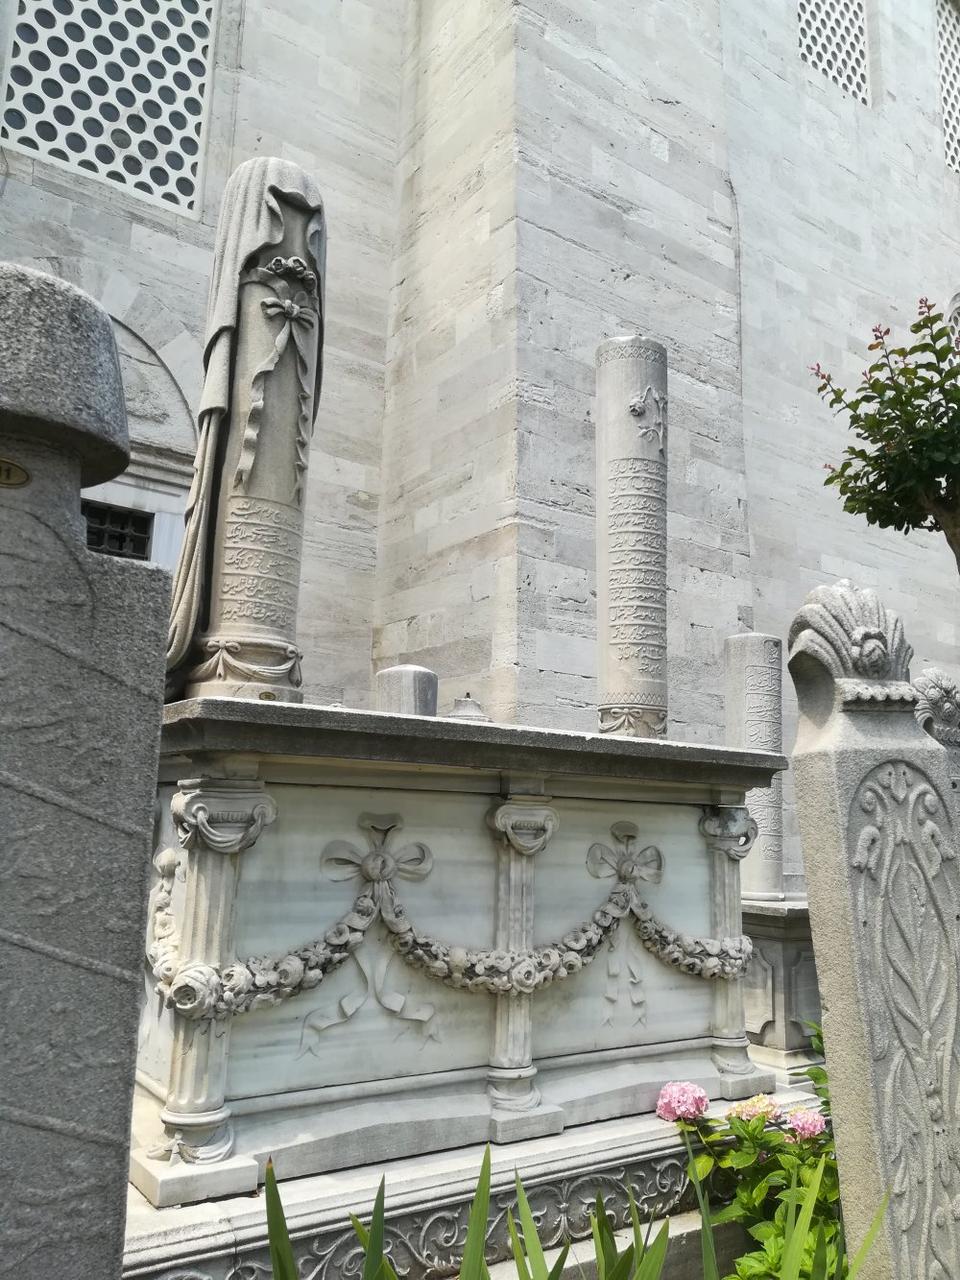 This tomb belongs to a young women Fatma MÃ¼Åerref HanÄ±m, passed away in 1910 and originally from Thessaloniki. She was engaged and passed away before she married, wherefore on the left tombestone, there is a bridal dress.